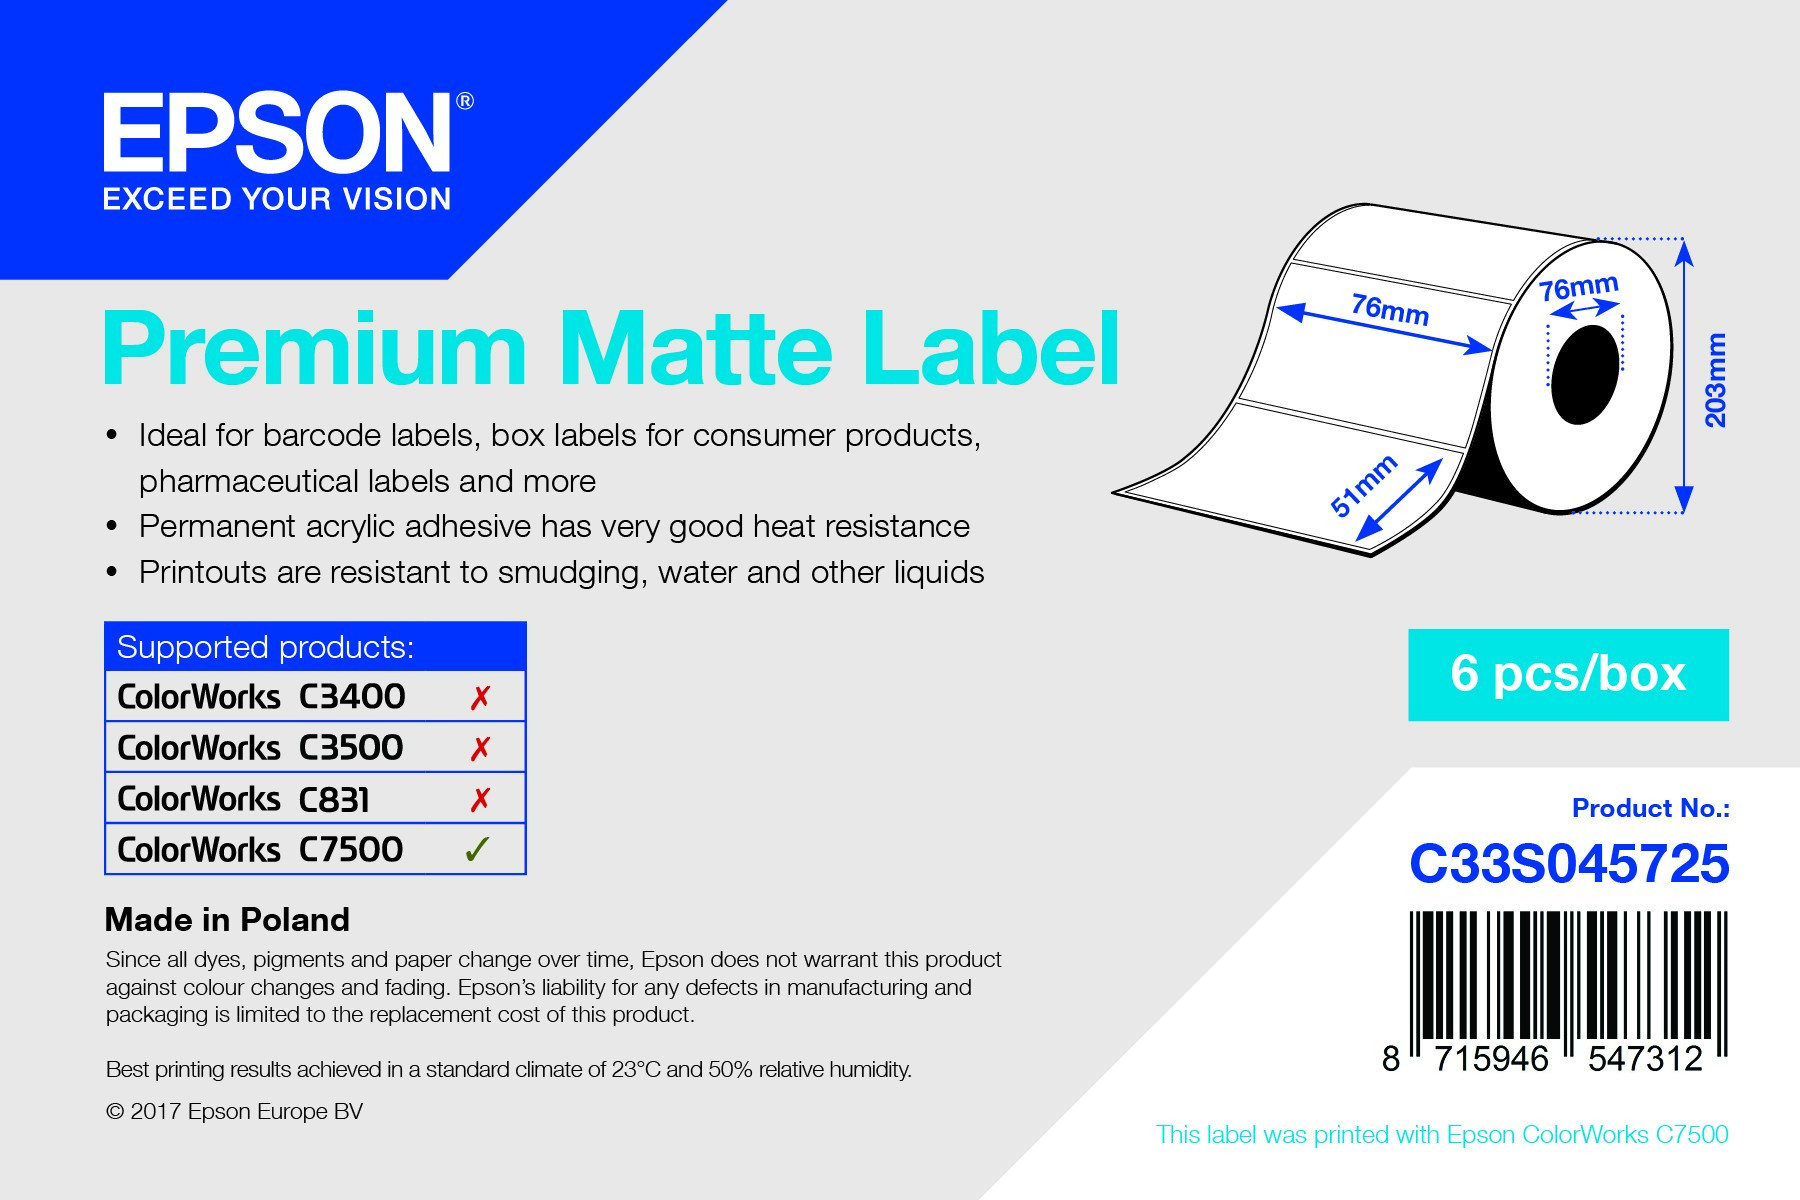 Epson prémium matt inkjet 76mm x 51mm 2310 címke/tekercs (C33S045725)